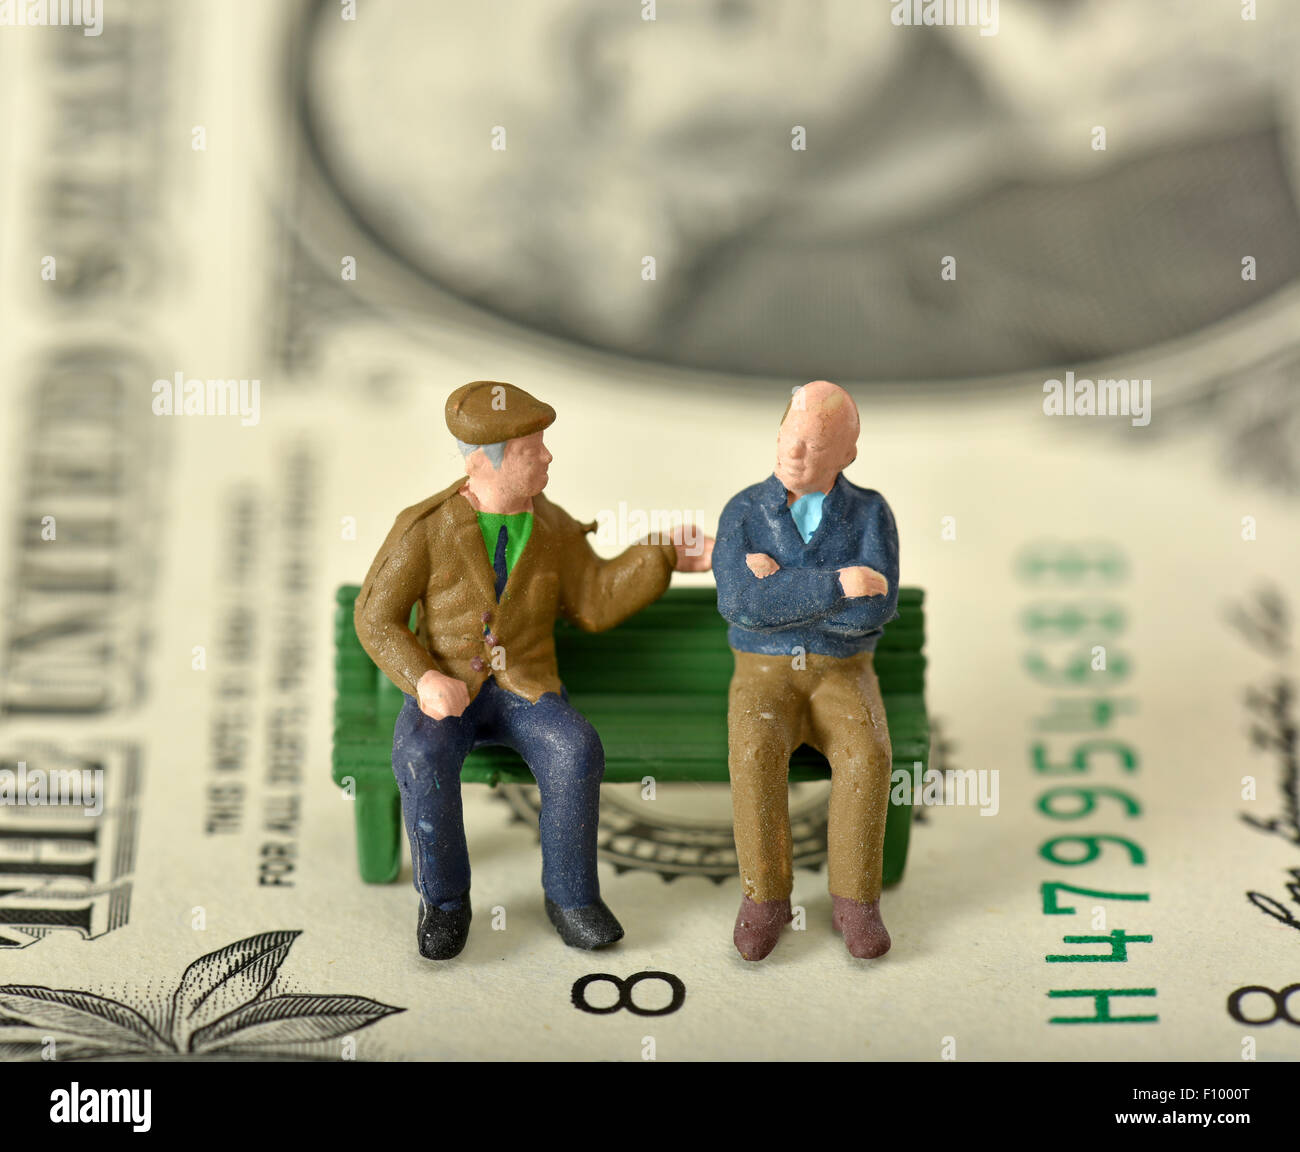 Les retraités sur un banc, dollar bill derrière, image symbolique de la retraite, de la pension d'État et privé Banque D'Images